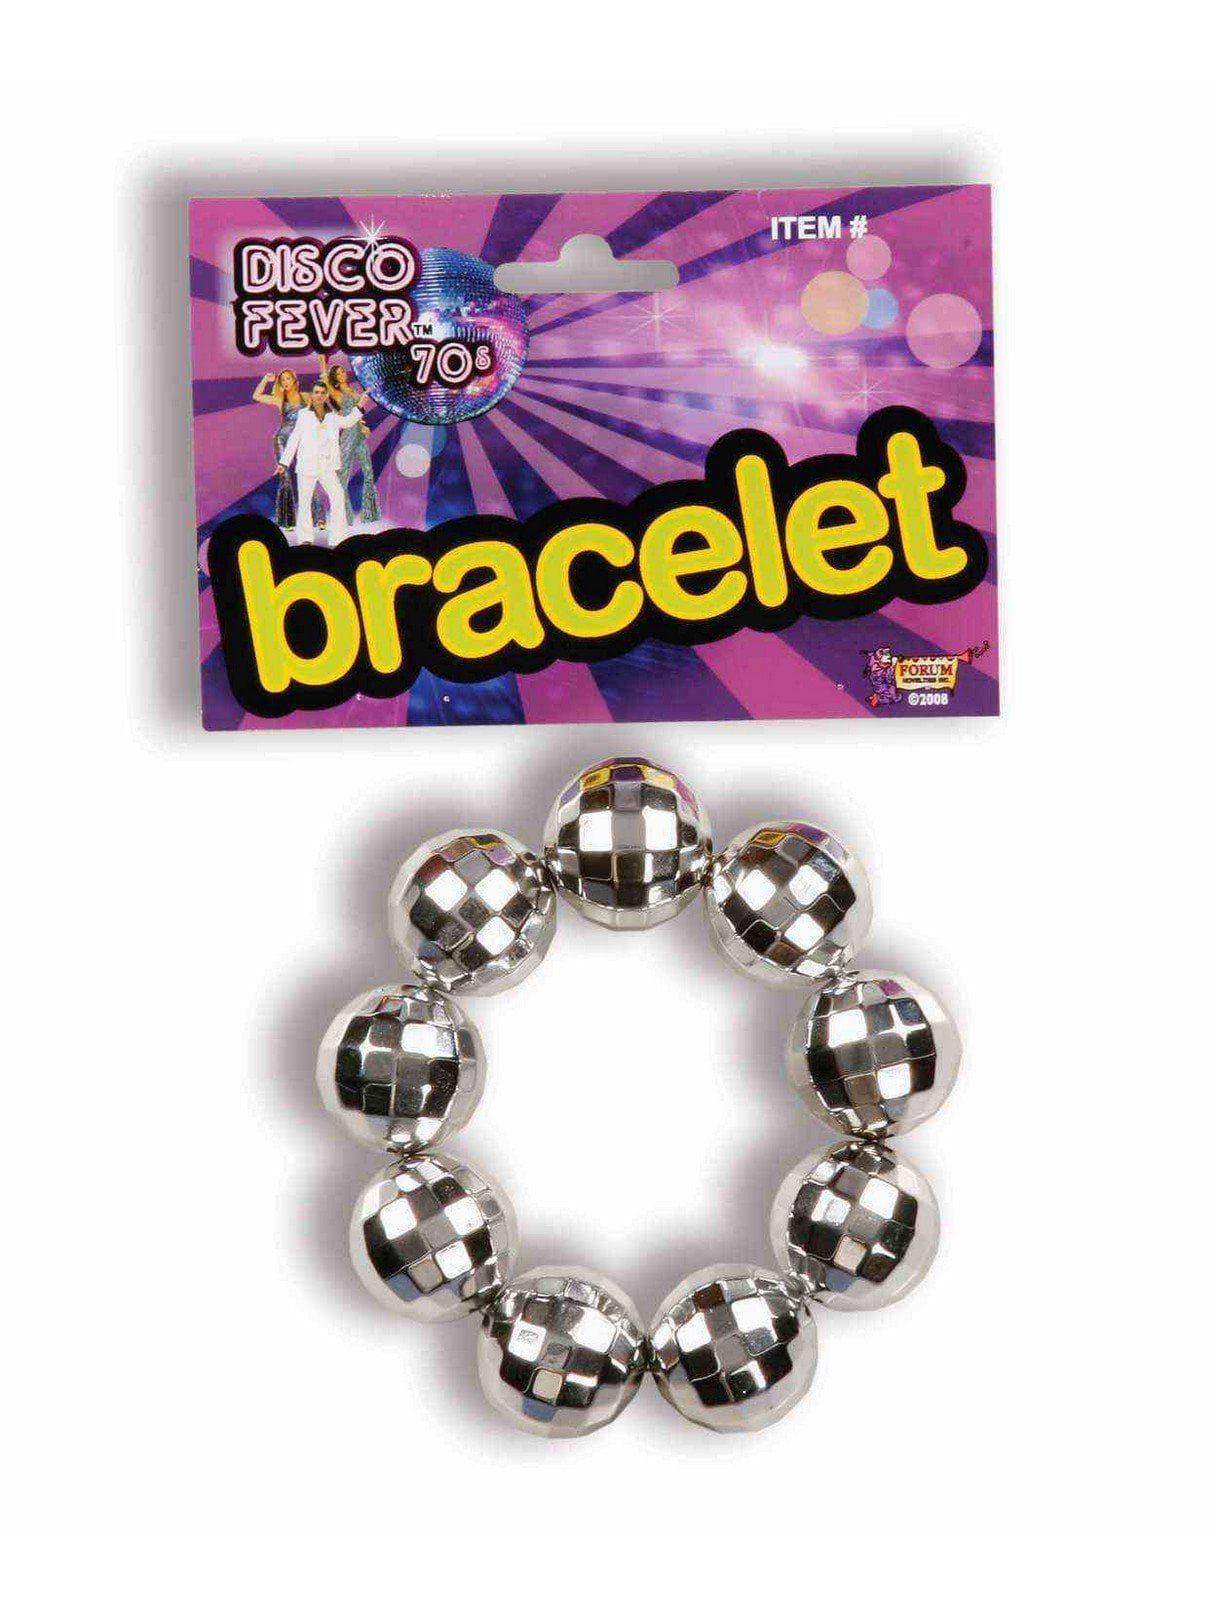 70s Disco Ball Bracelet - costumes.com